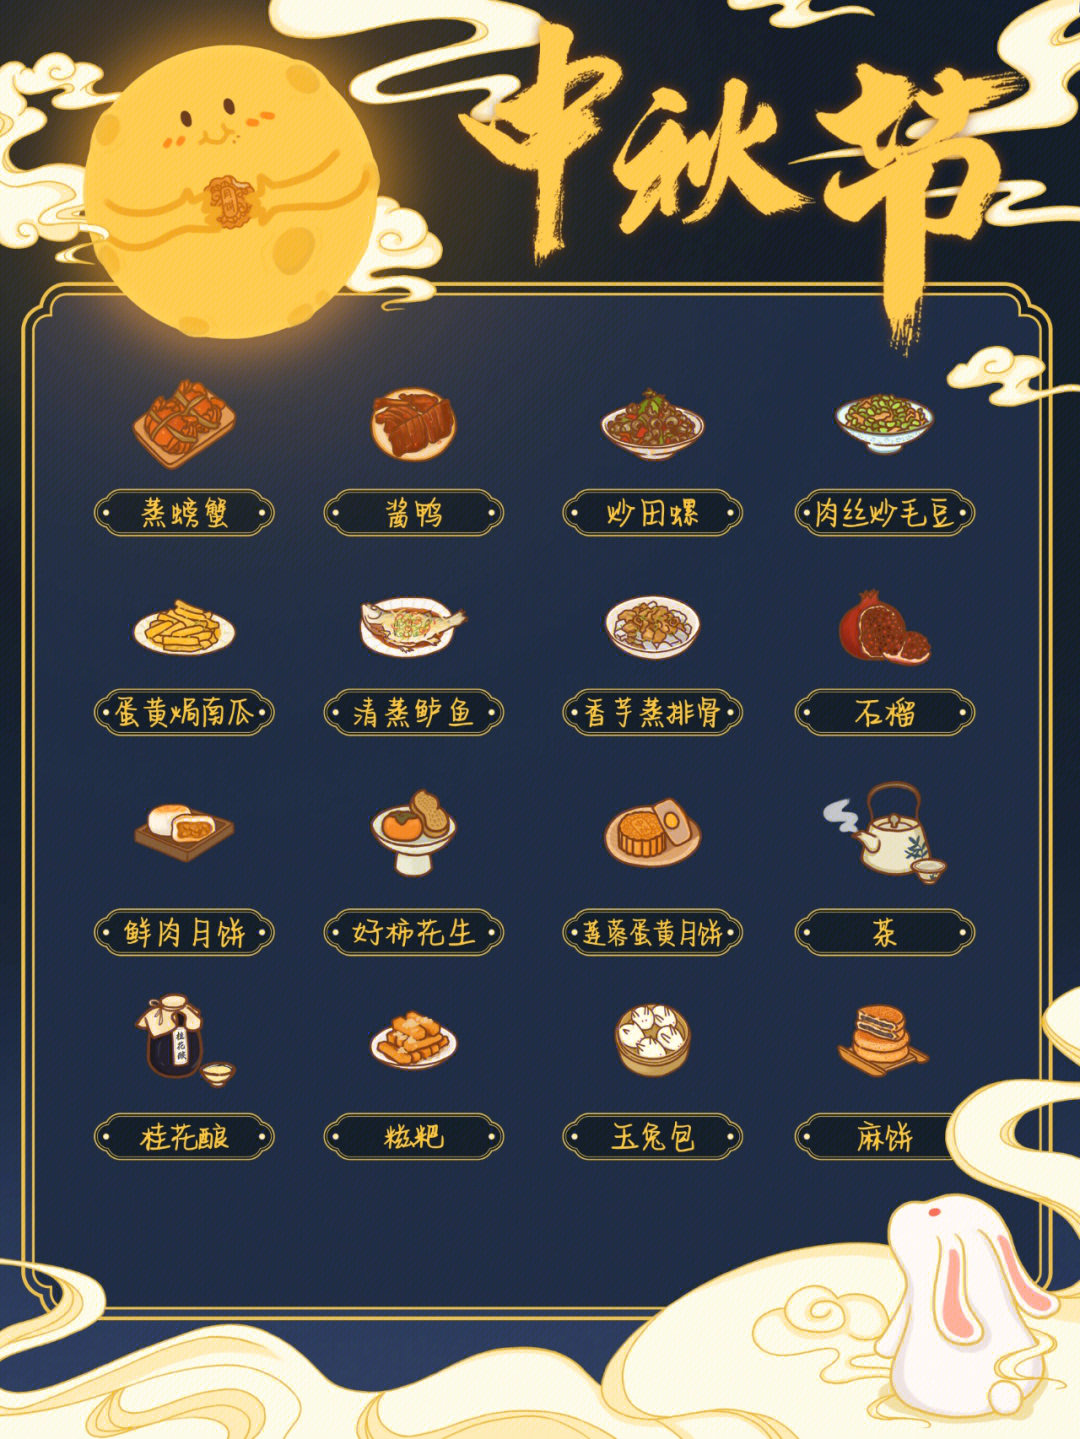 中秋节菜单 家宴图片